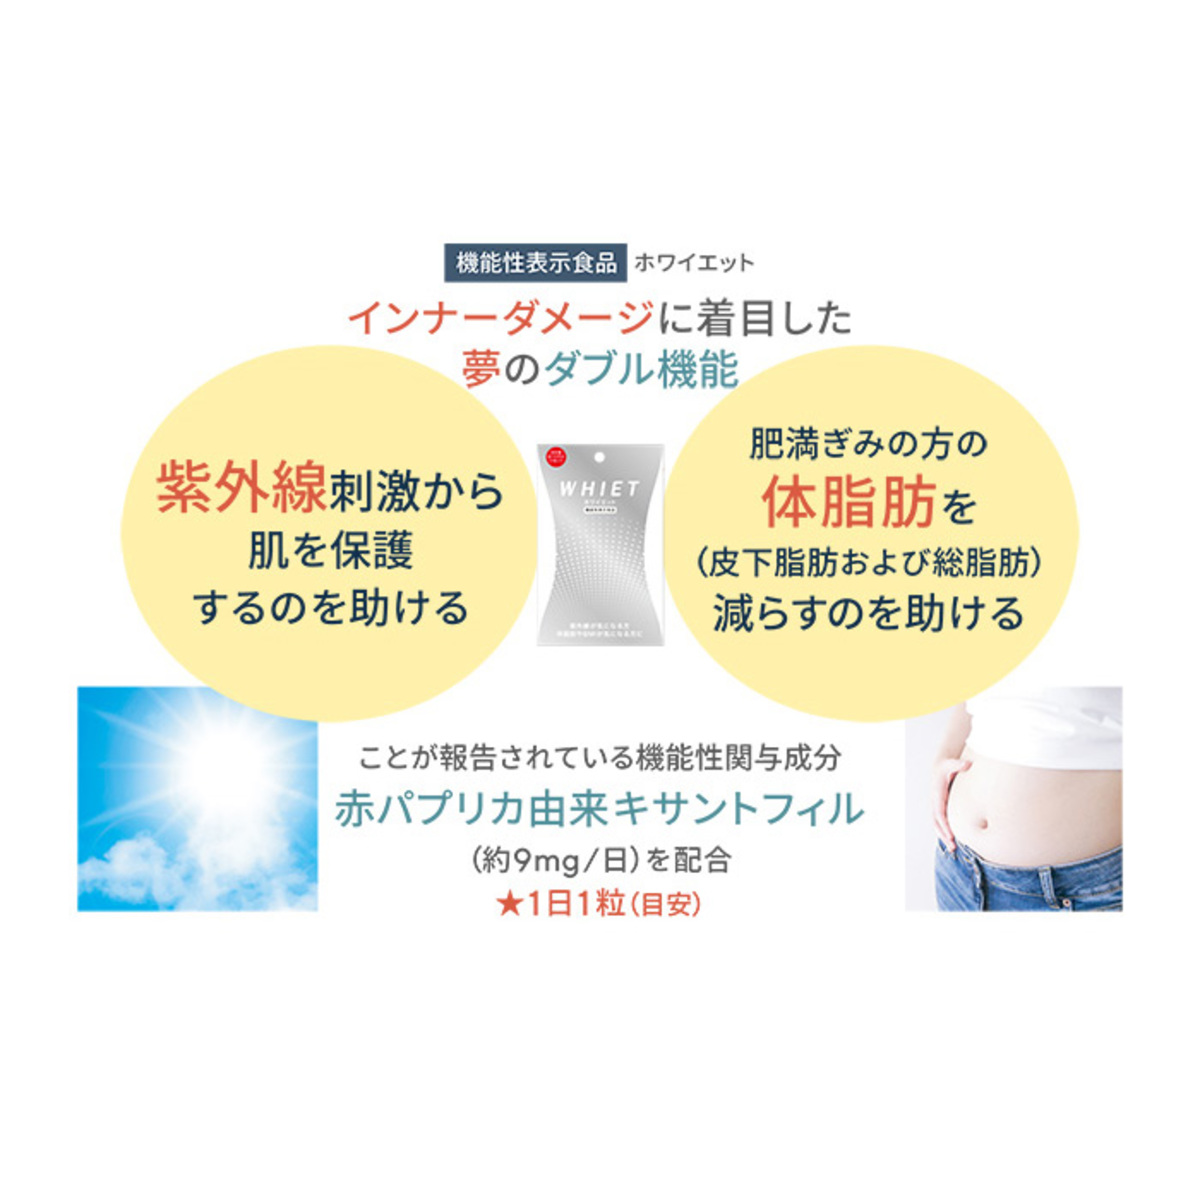 機能性表示食品 ホワイエット 31日分 オルト（Ortho） - QVC.jp